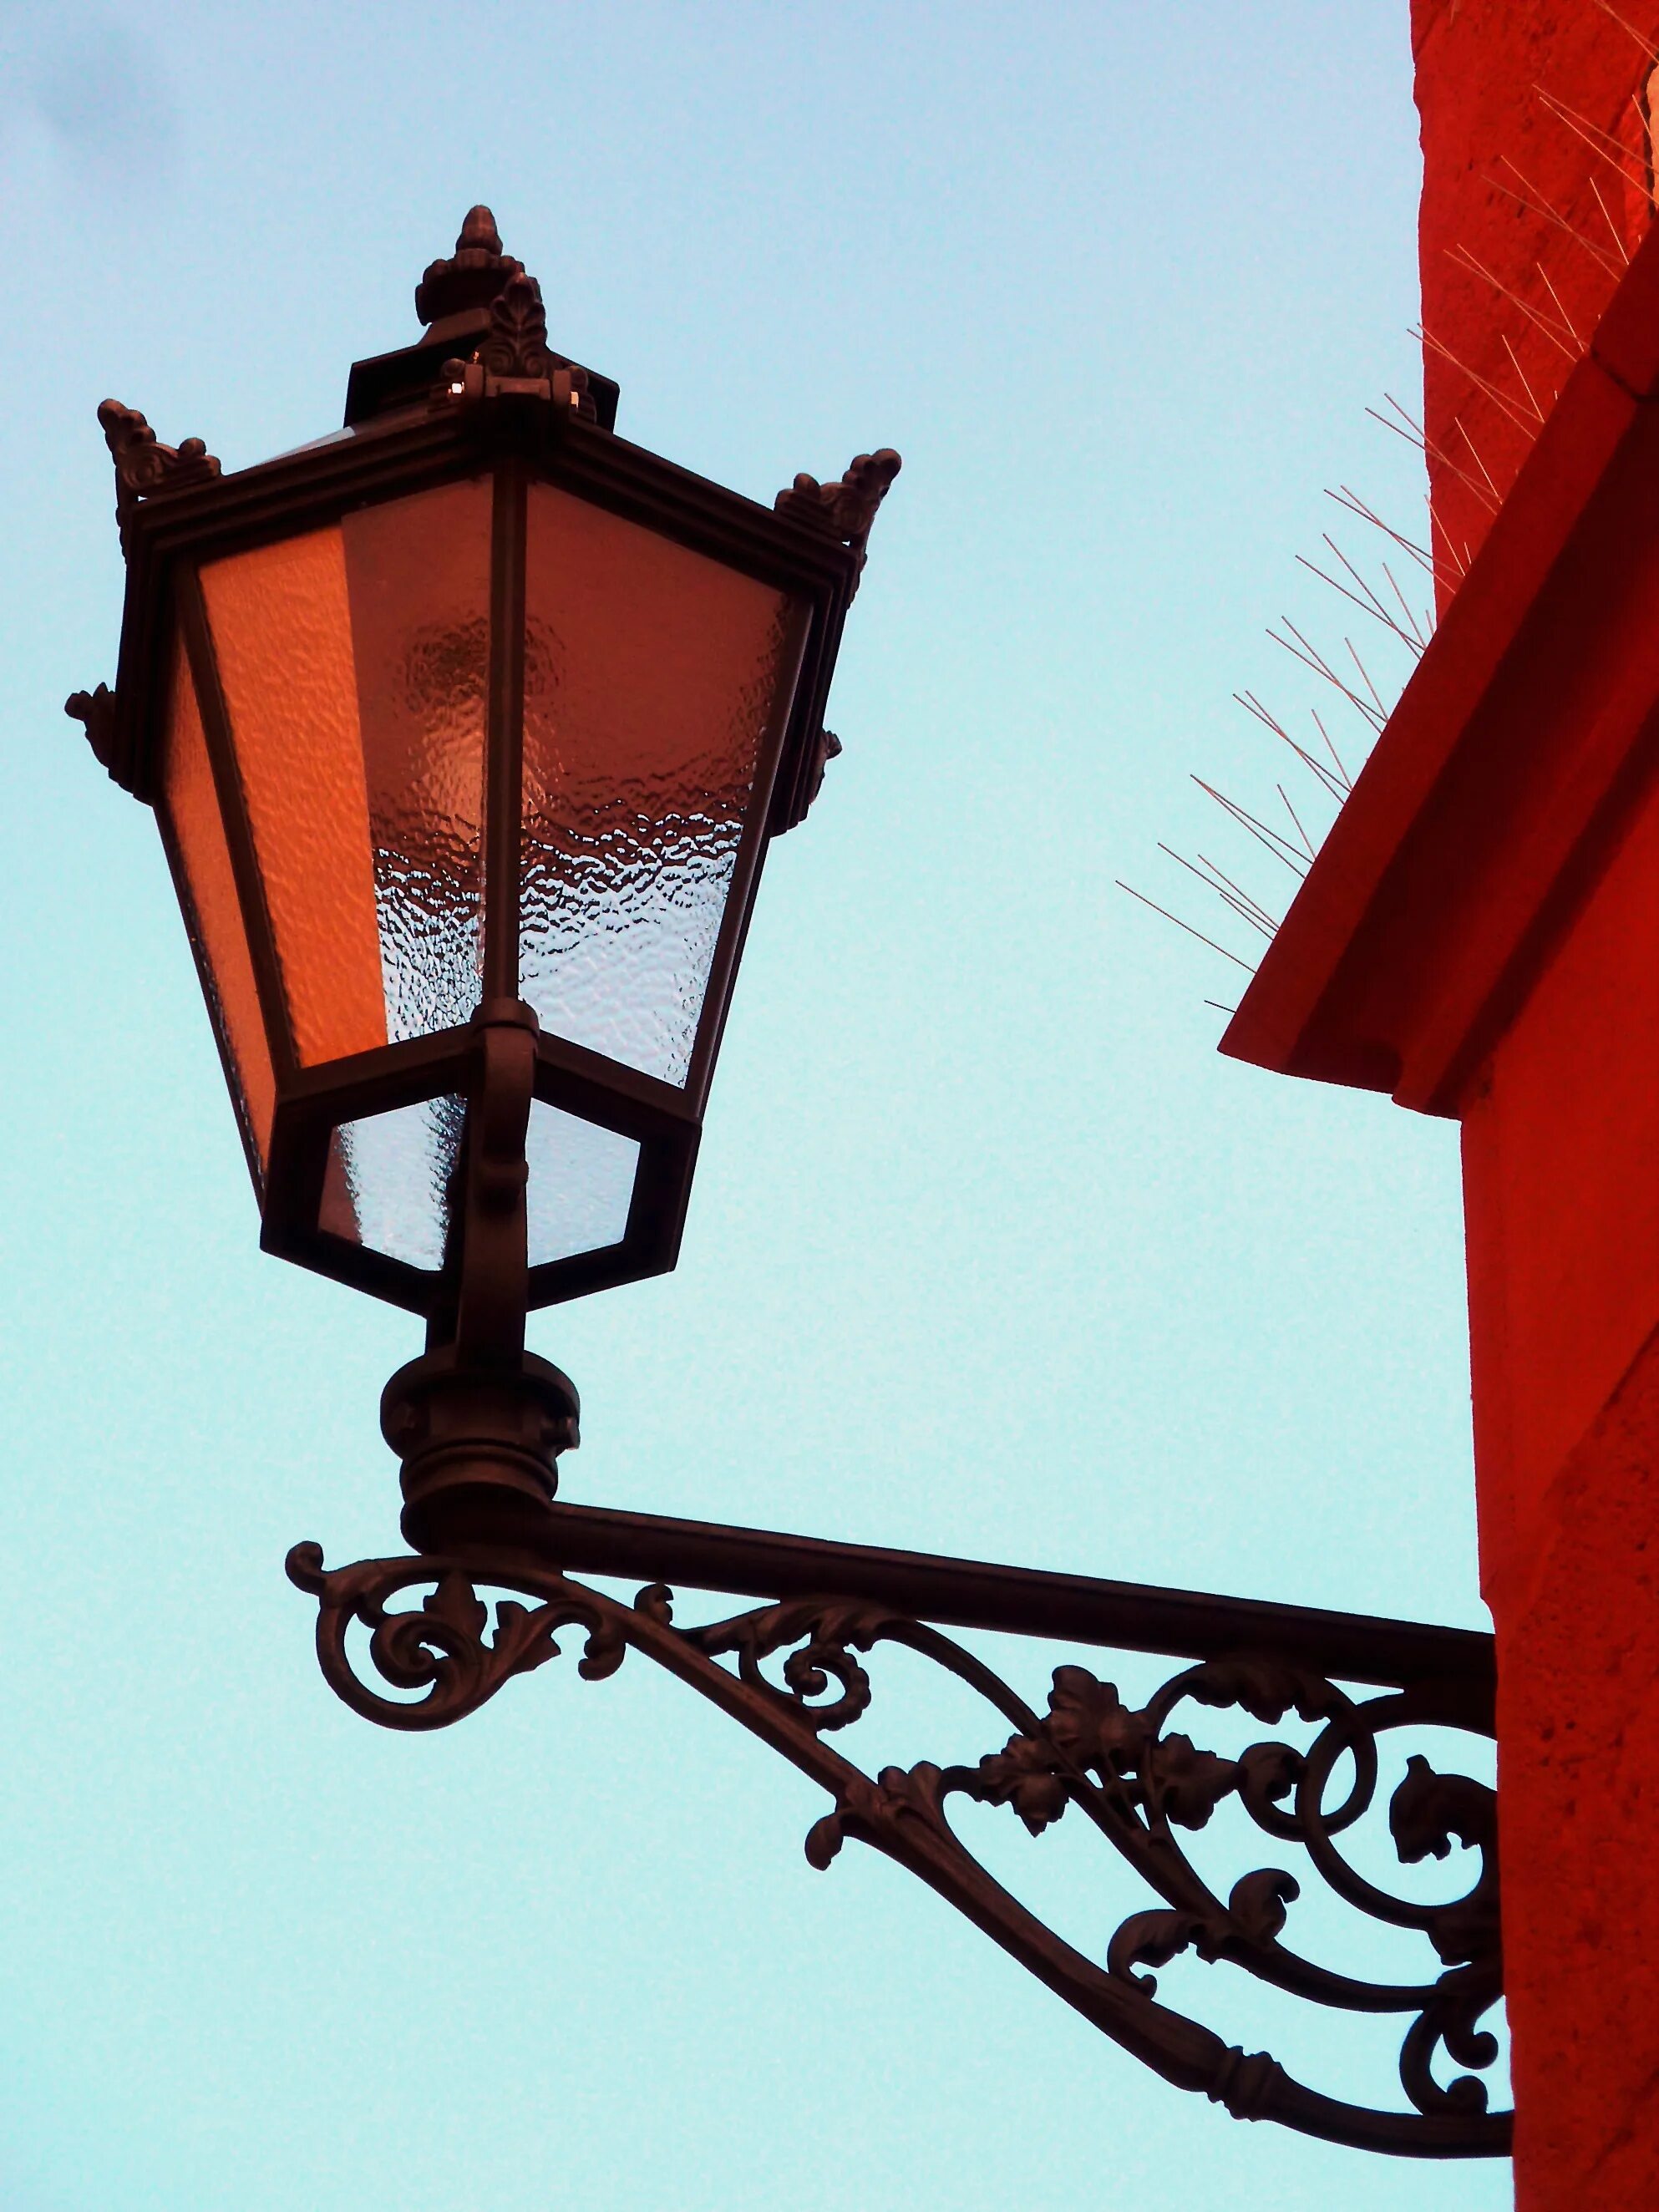 Фонарик красного света. Уличный фонарь. Красивые фонари. Красивый уличный фонарь. Красивый старинный фонарь.